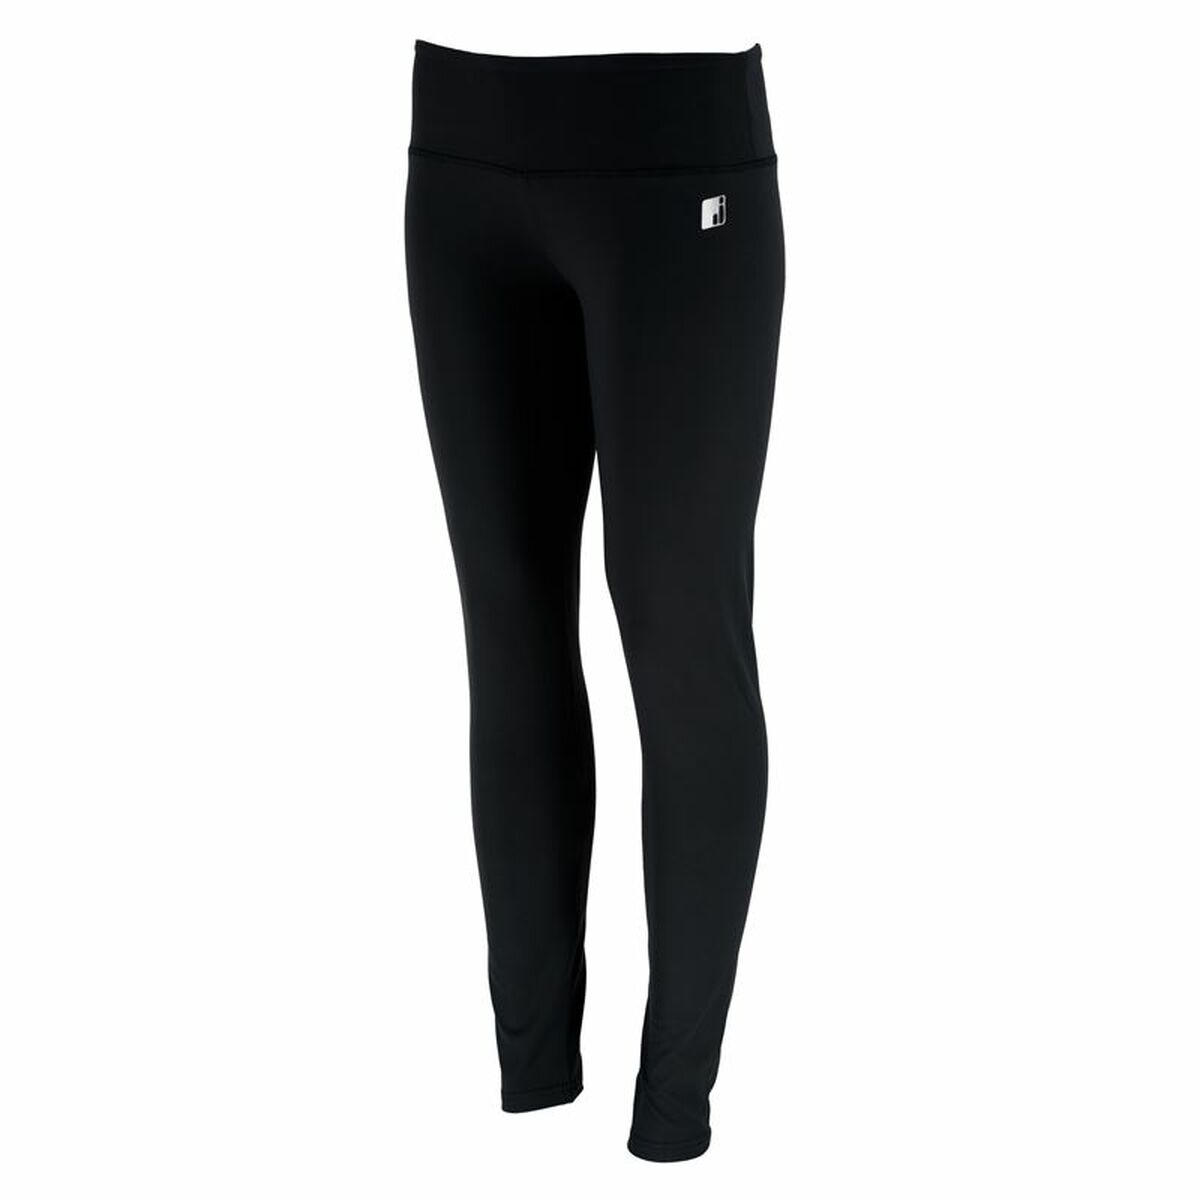 Sport leggings for Women Joluvi Fit - Flex Black